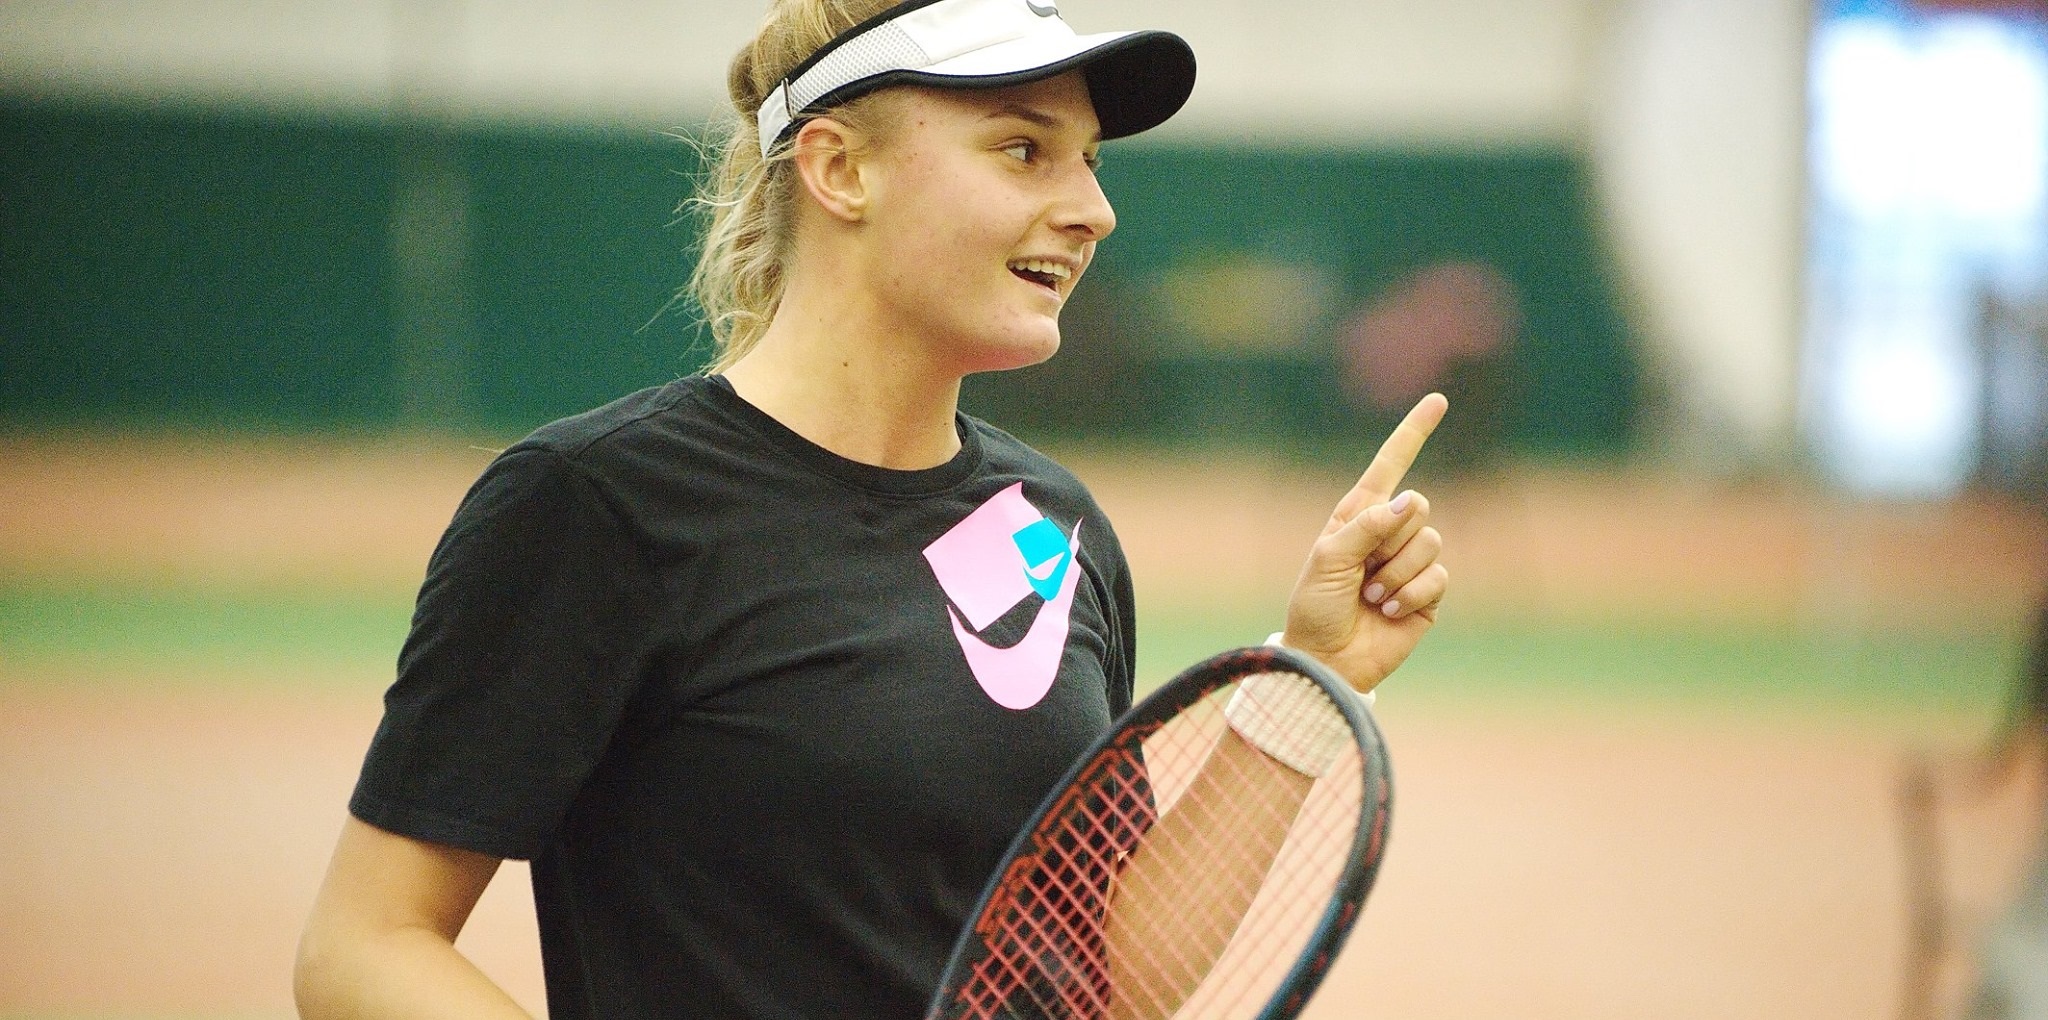 Теннисистка Ястремская согласилась играть за сборную Украины